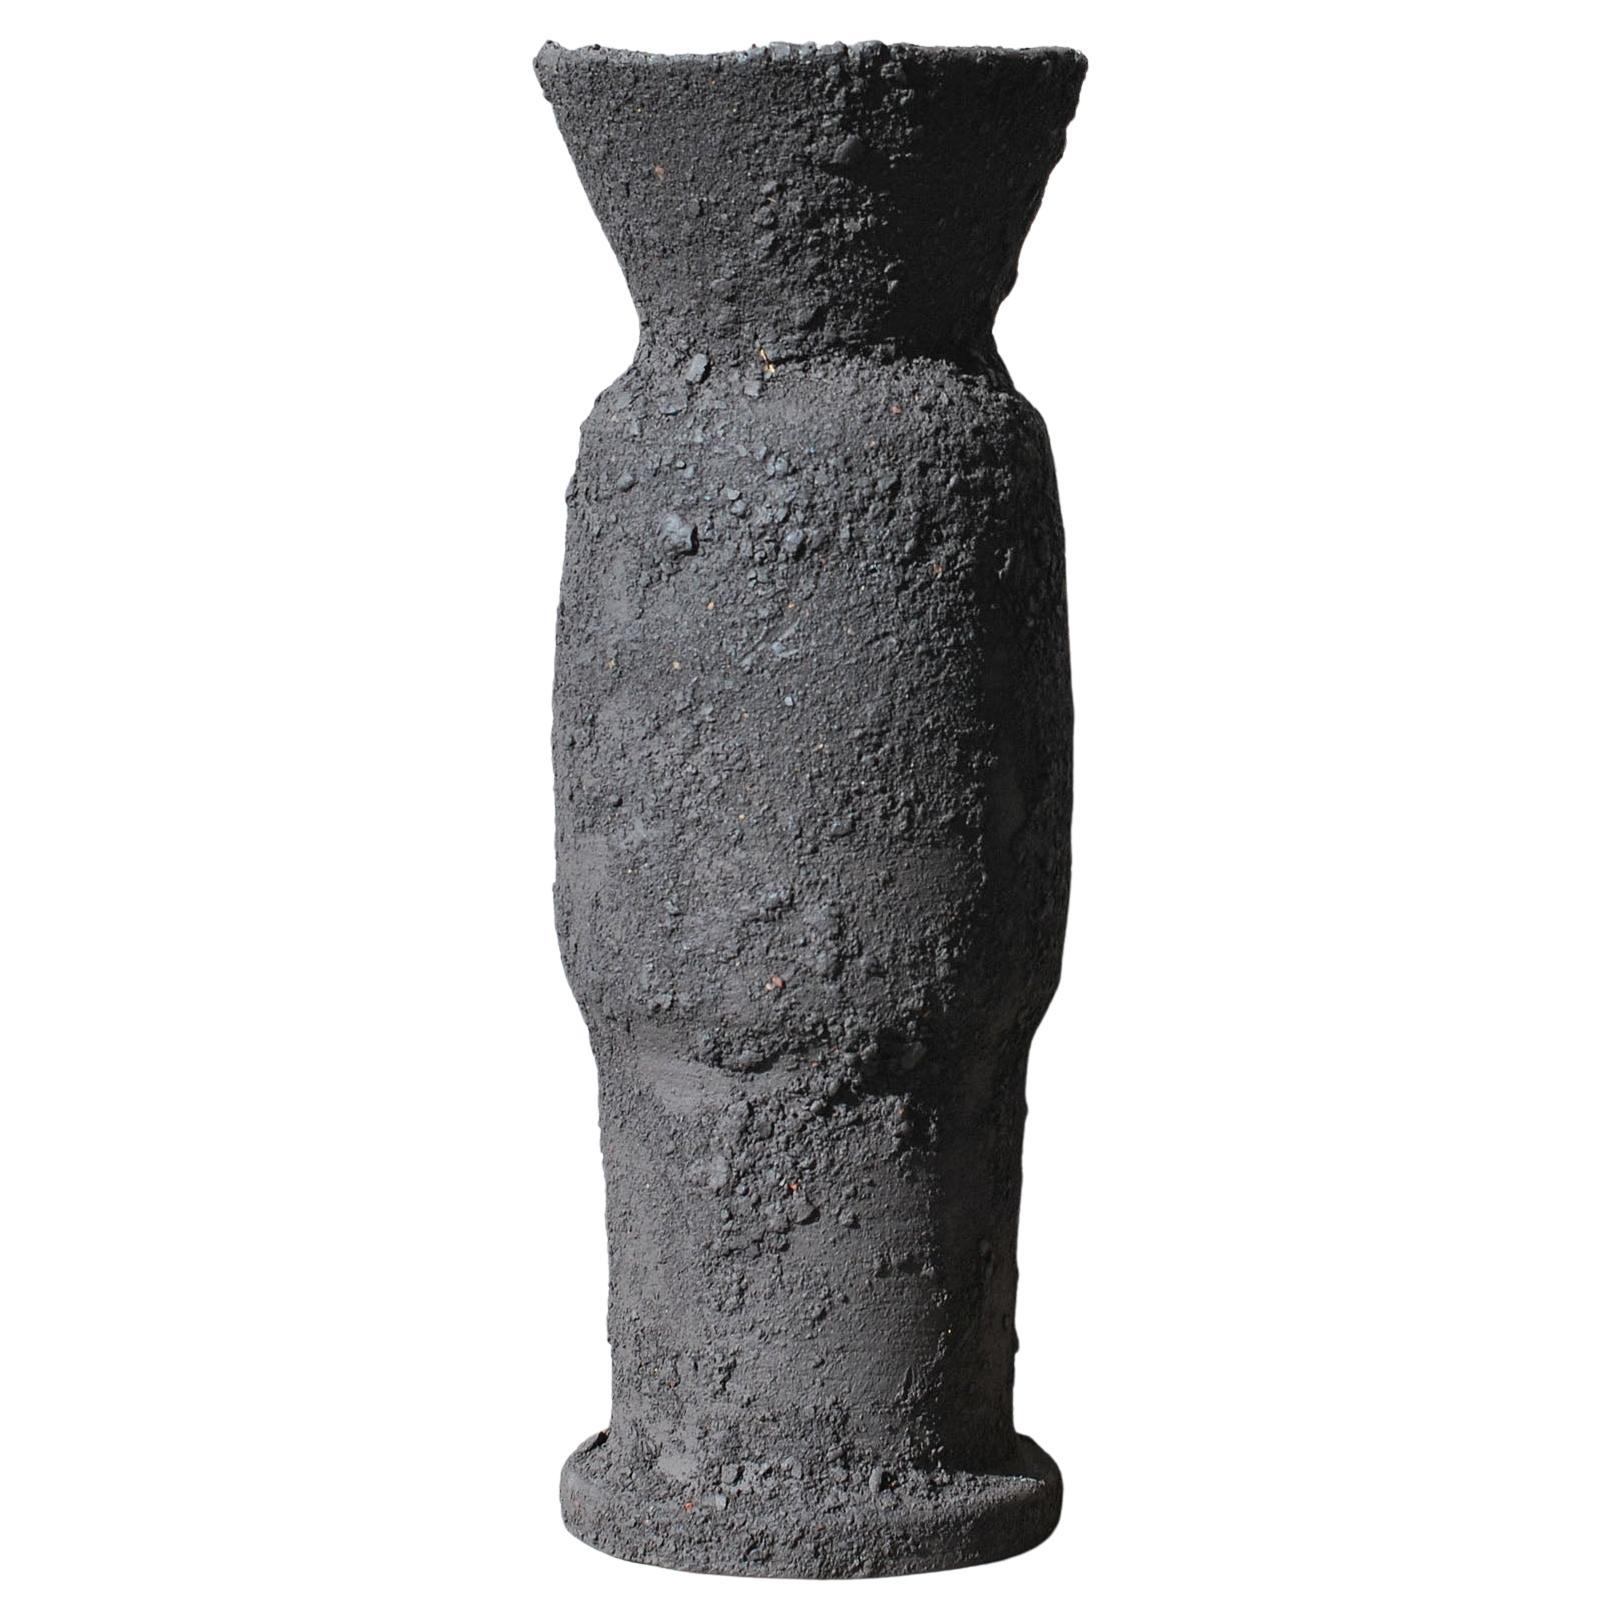 Black Sandstone Vessel Vase by Moïo Studio